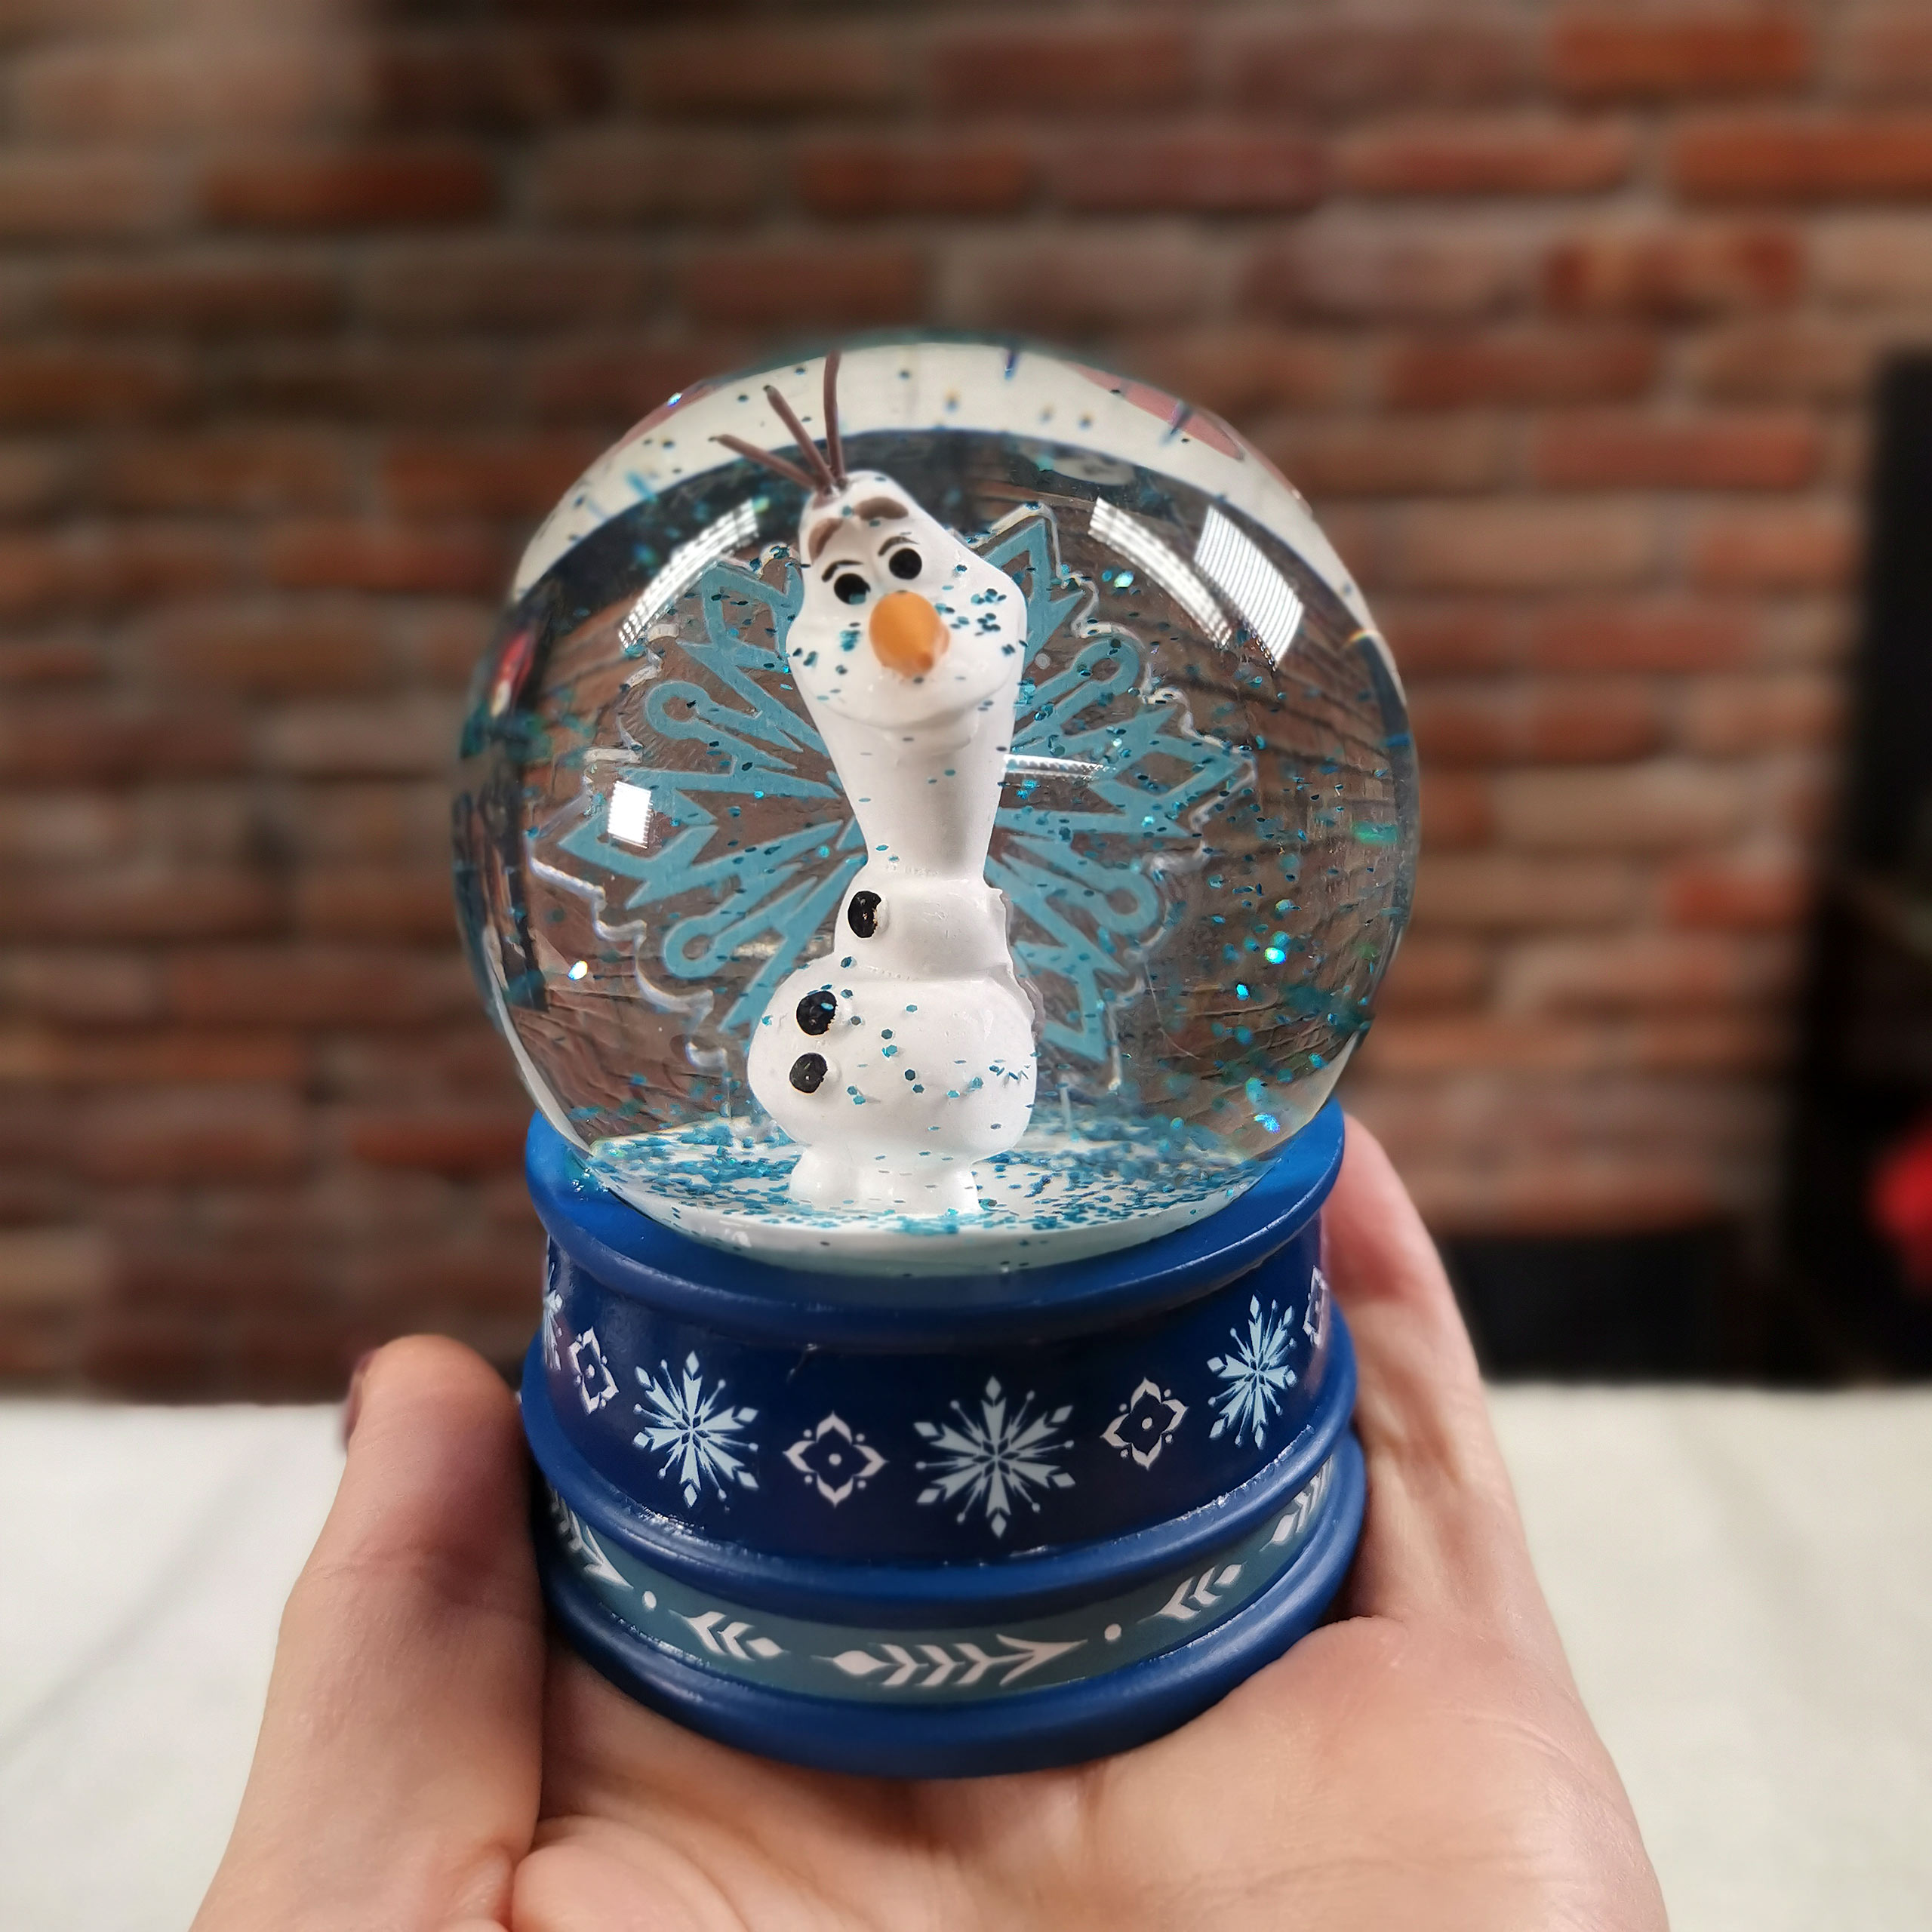 Frozen - Boule à neige Olaf avec paillettes